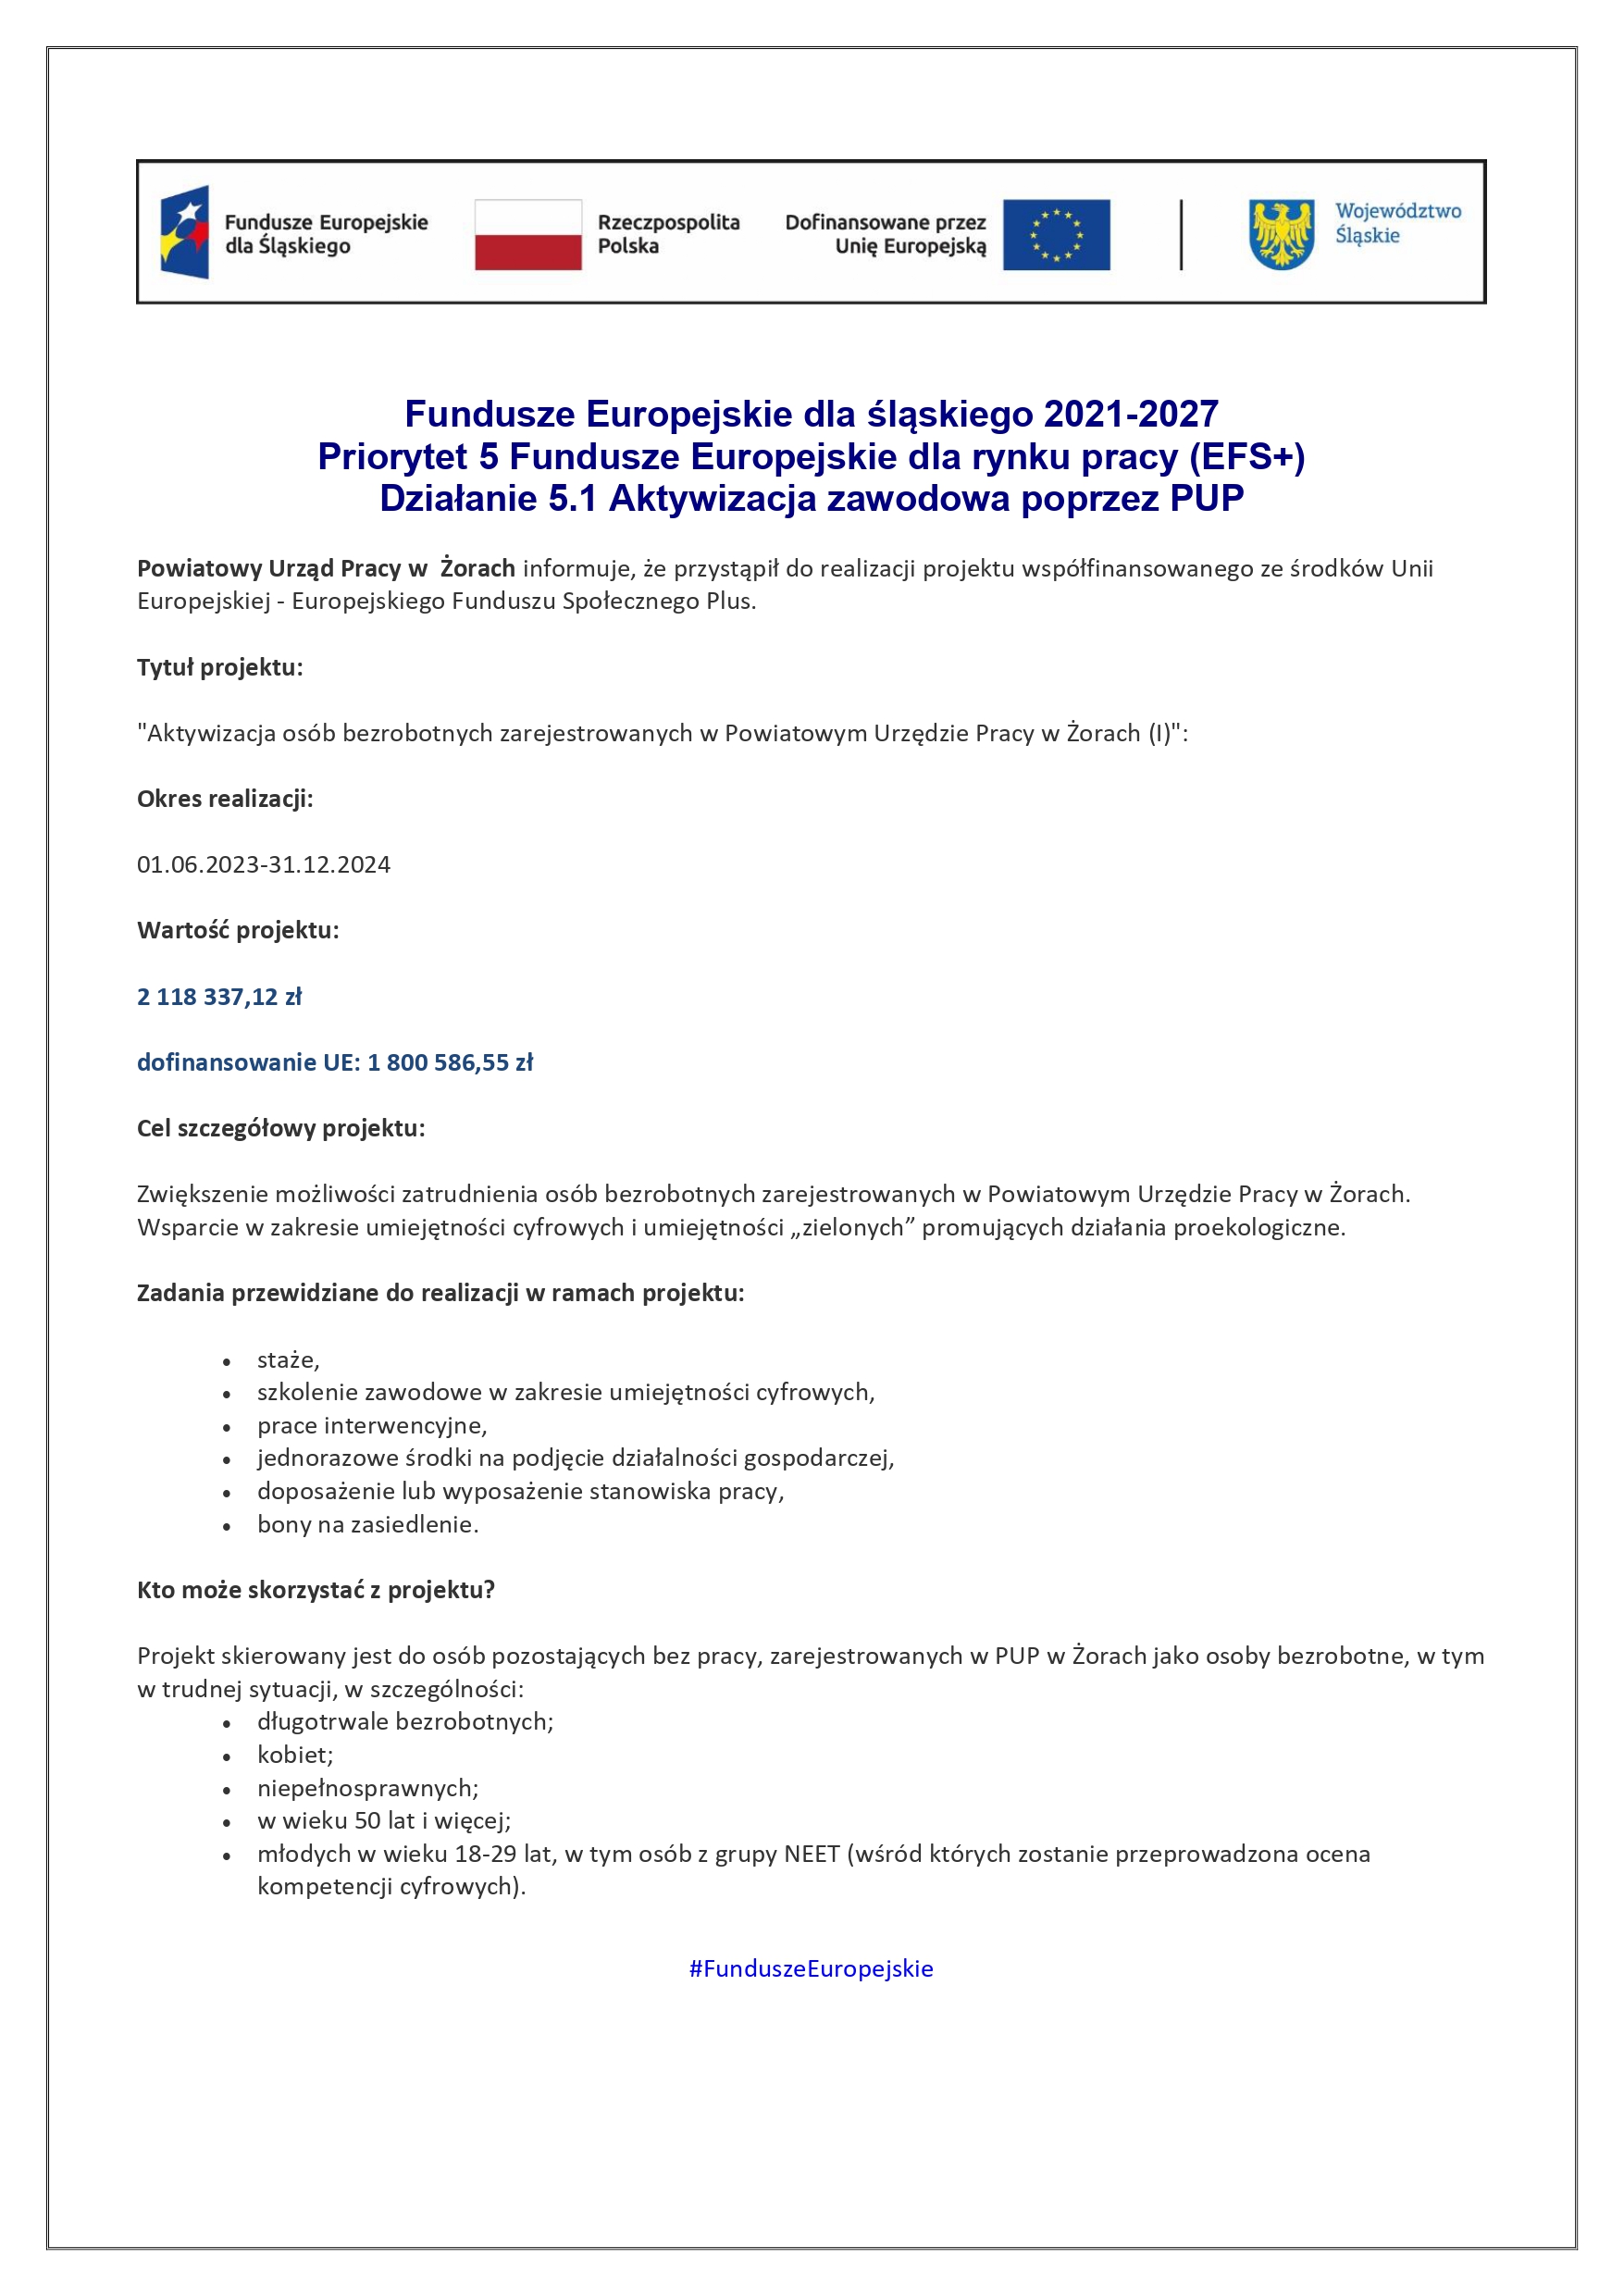 plakat zawierający informacje nt. projektu EFS